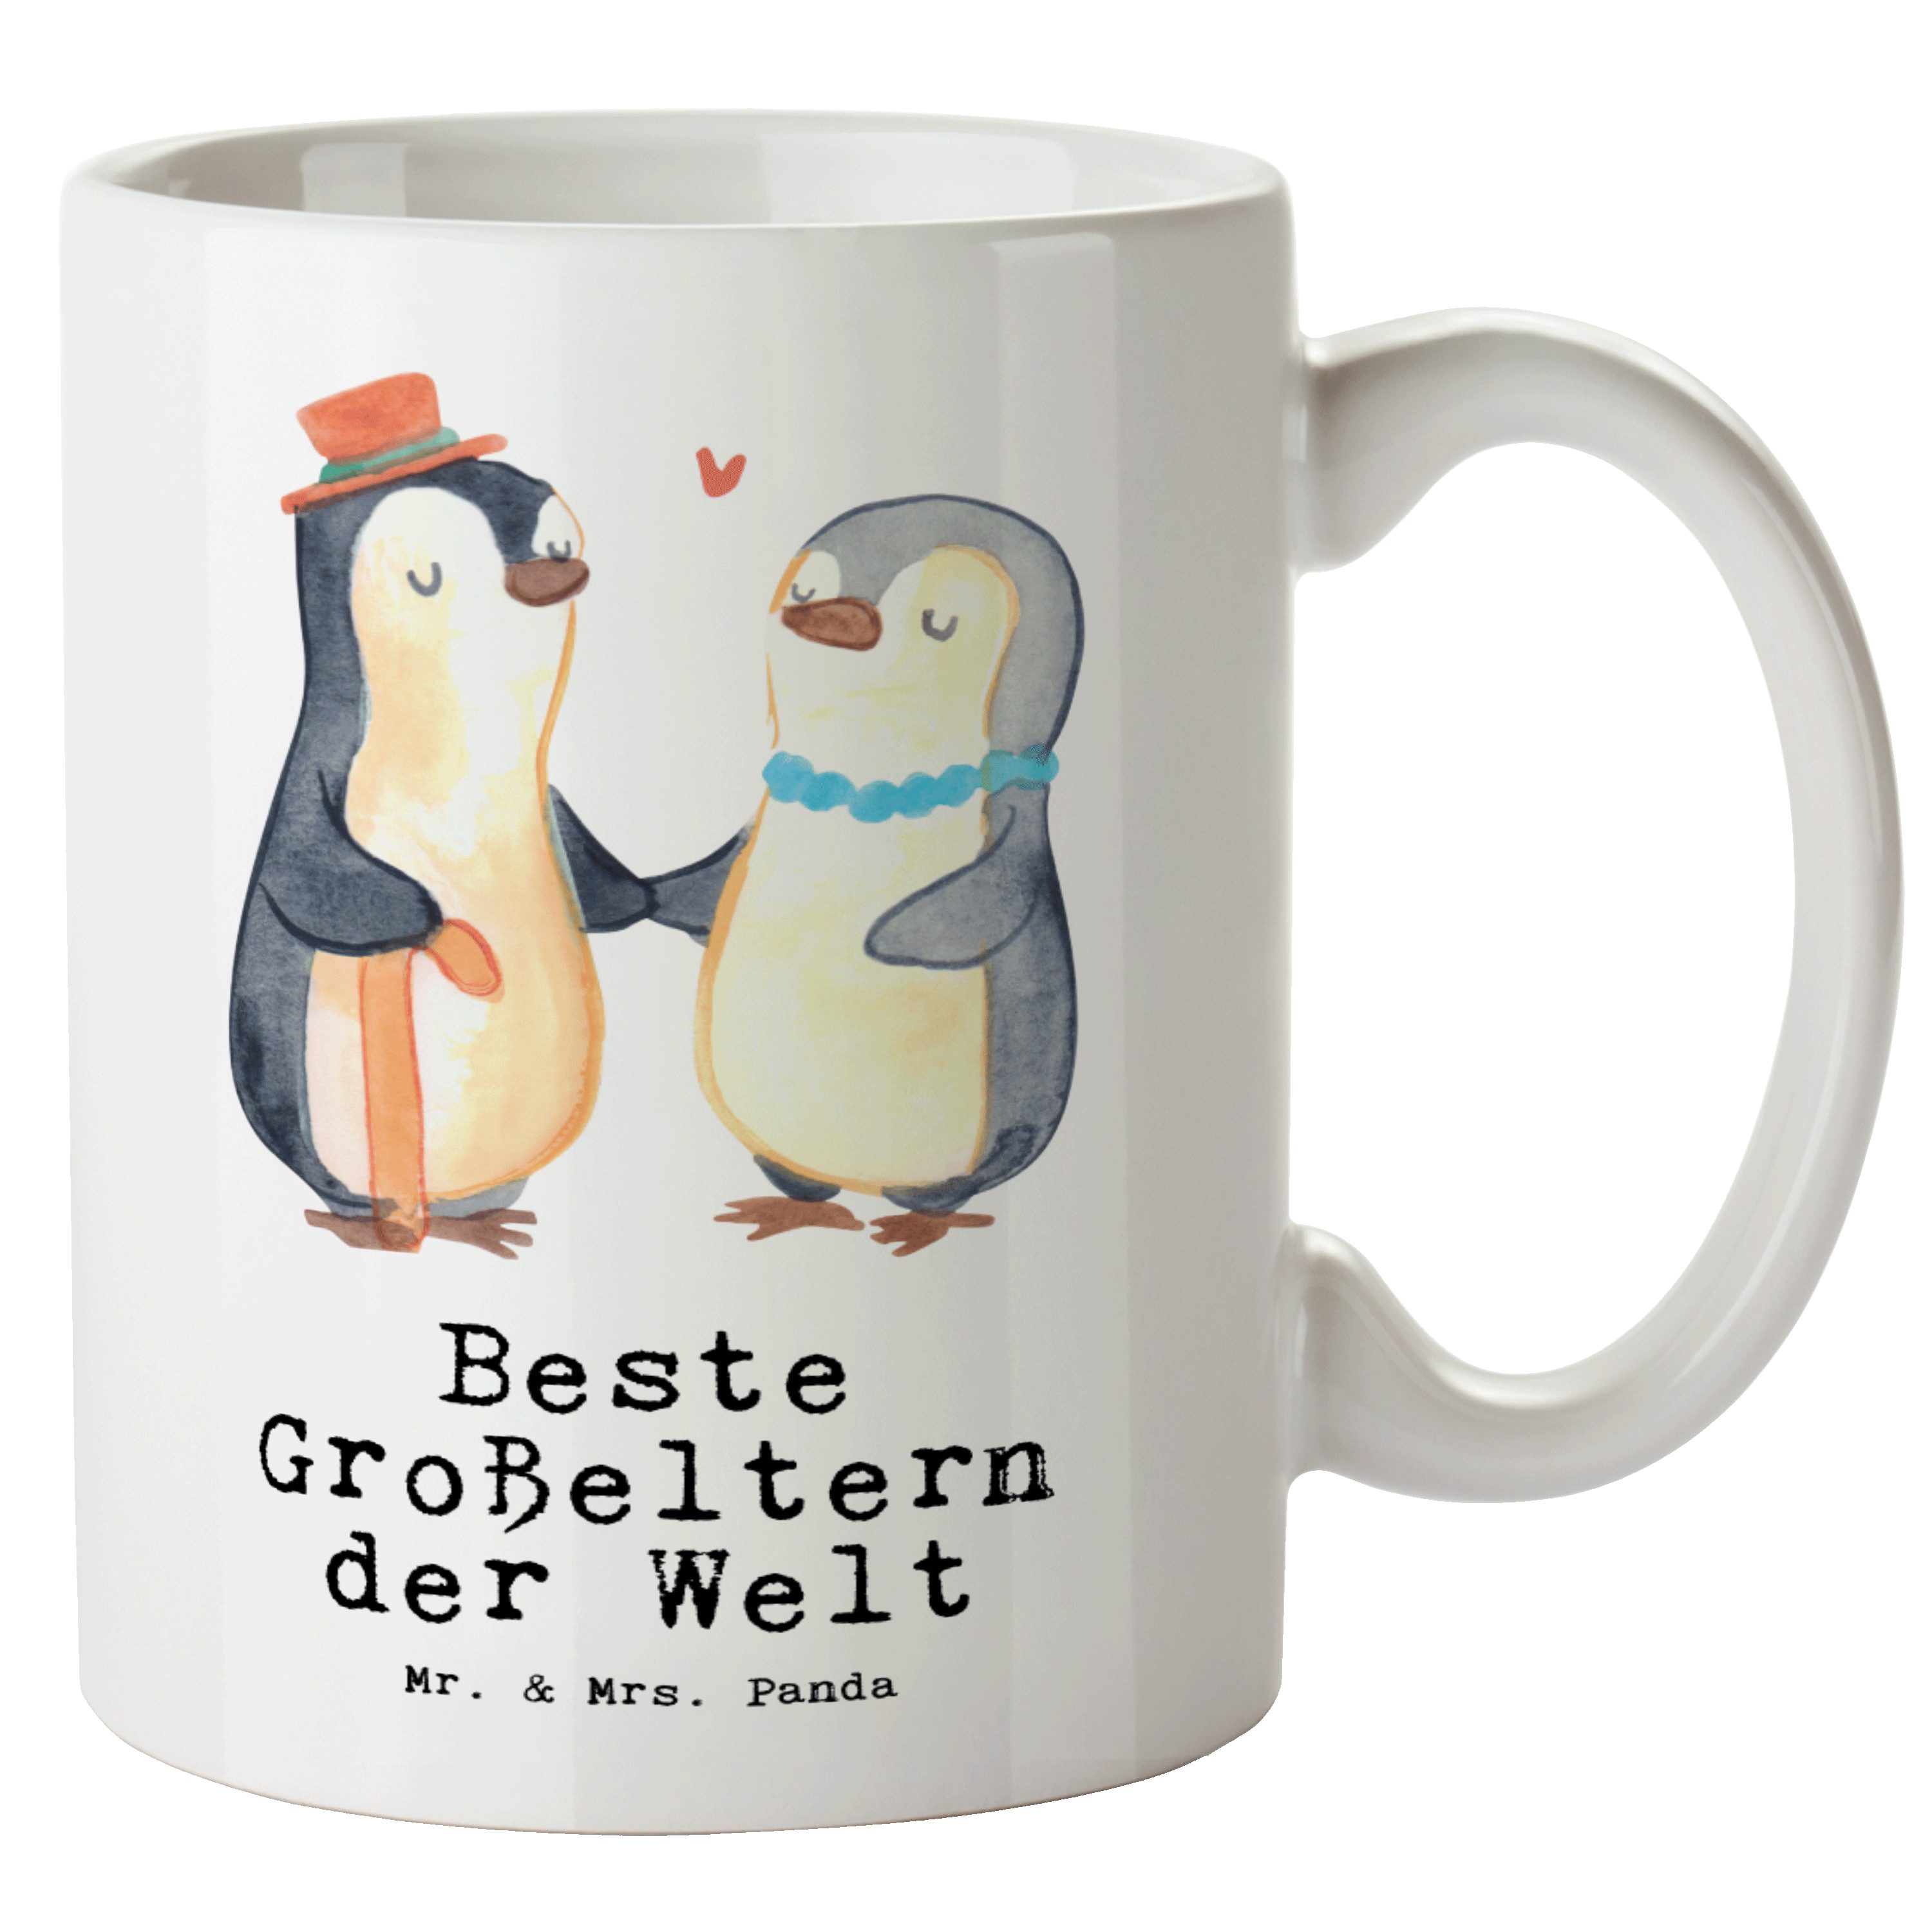 Mr. & Mrs. Panda Tasse Pinguin Beste Großeltern der Welt - Weiß - Geschenk, Oppa, Freude mac, XL Tasse Keramik